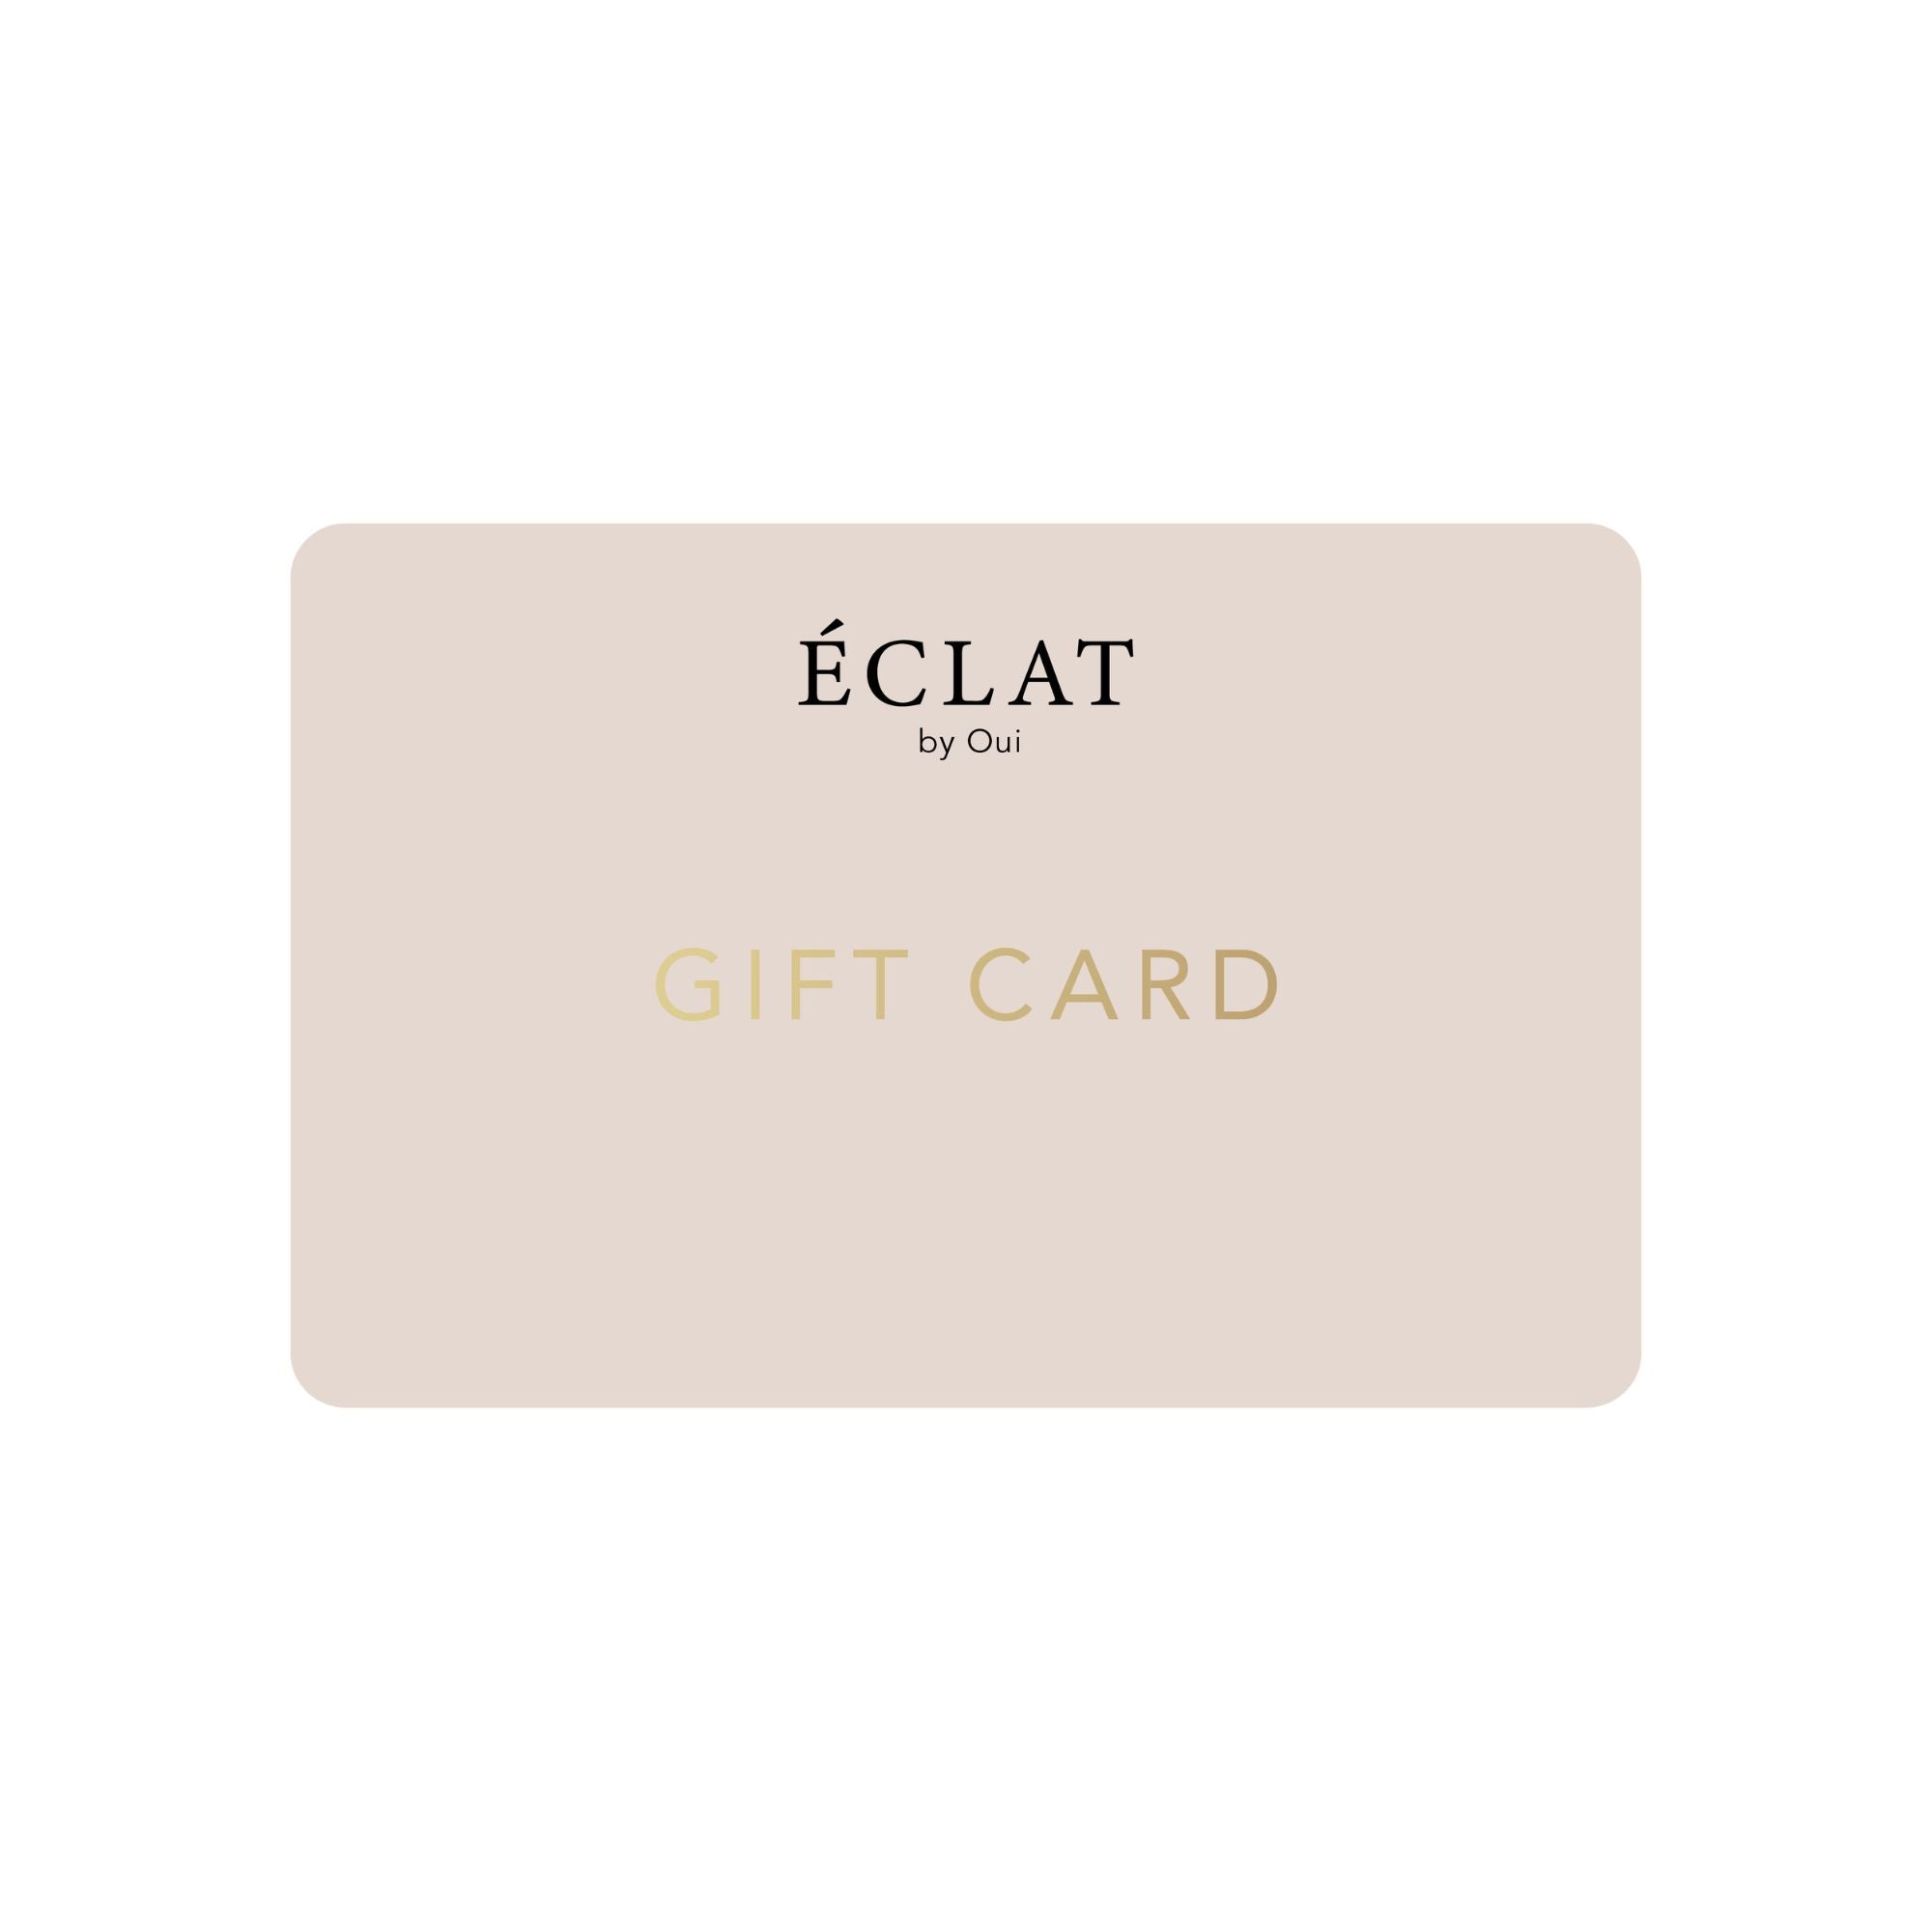 Eclat by Oui Gift Card